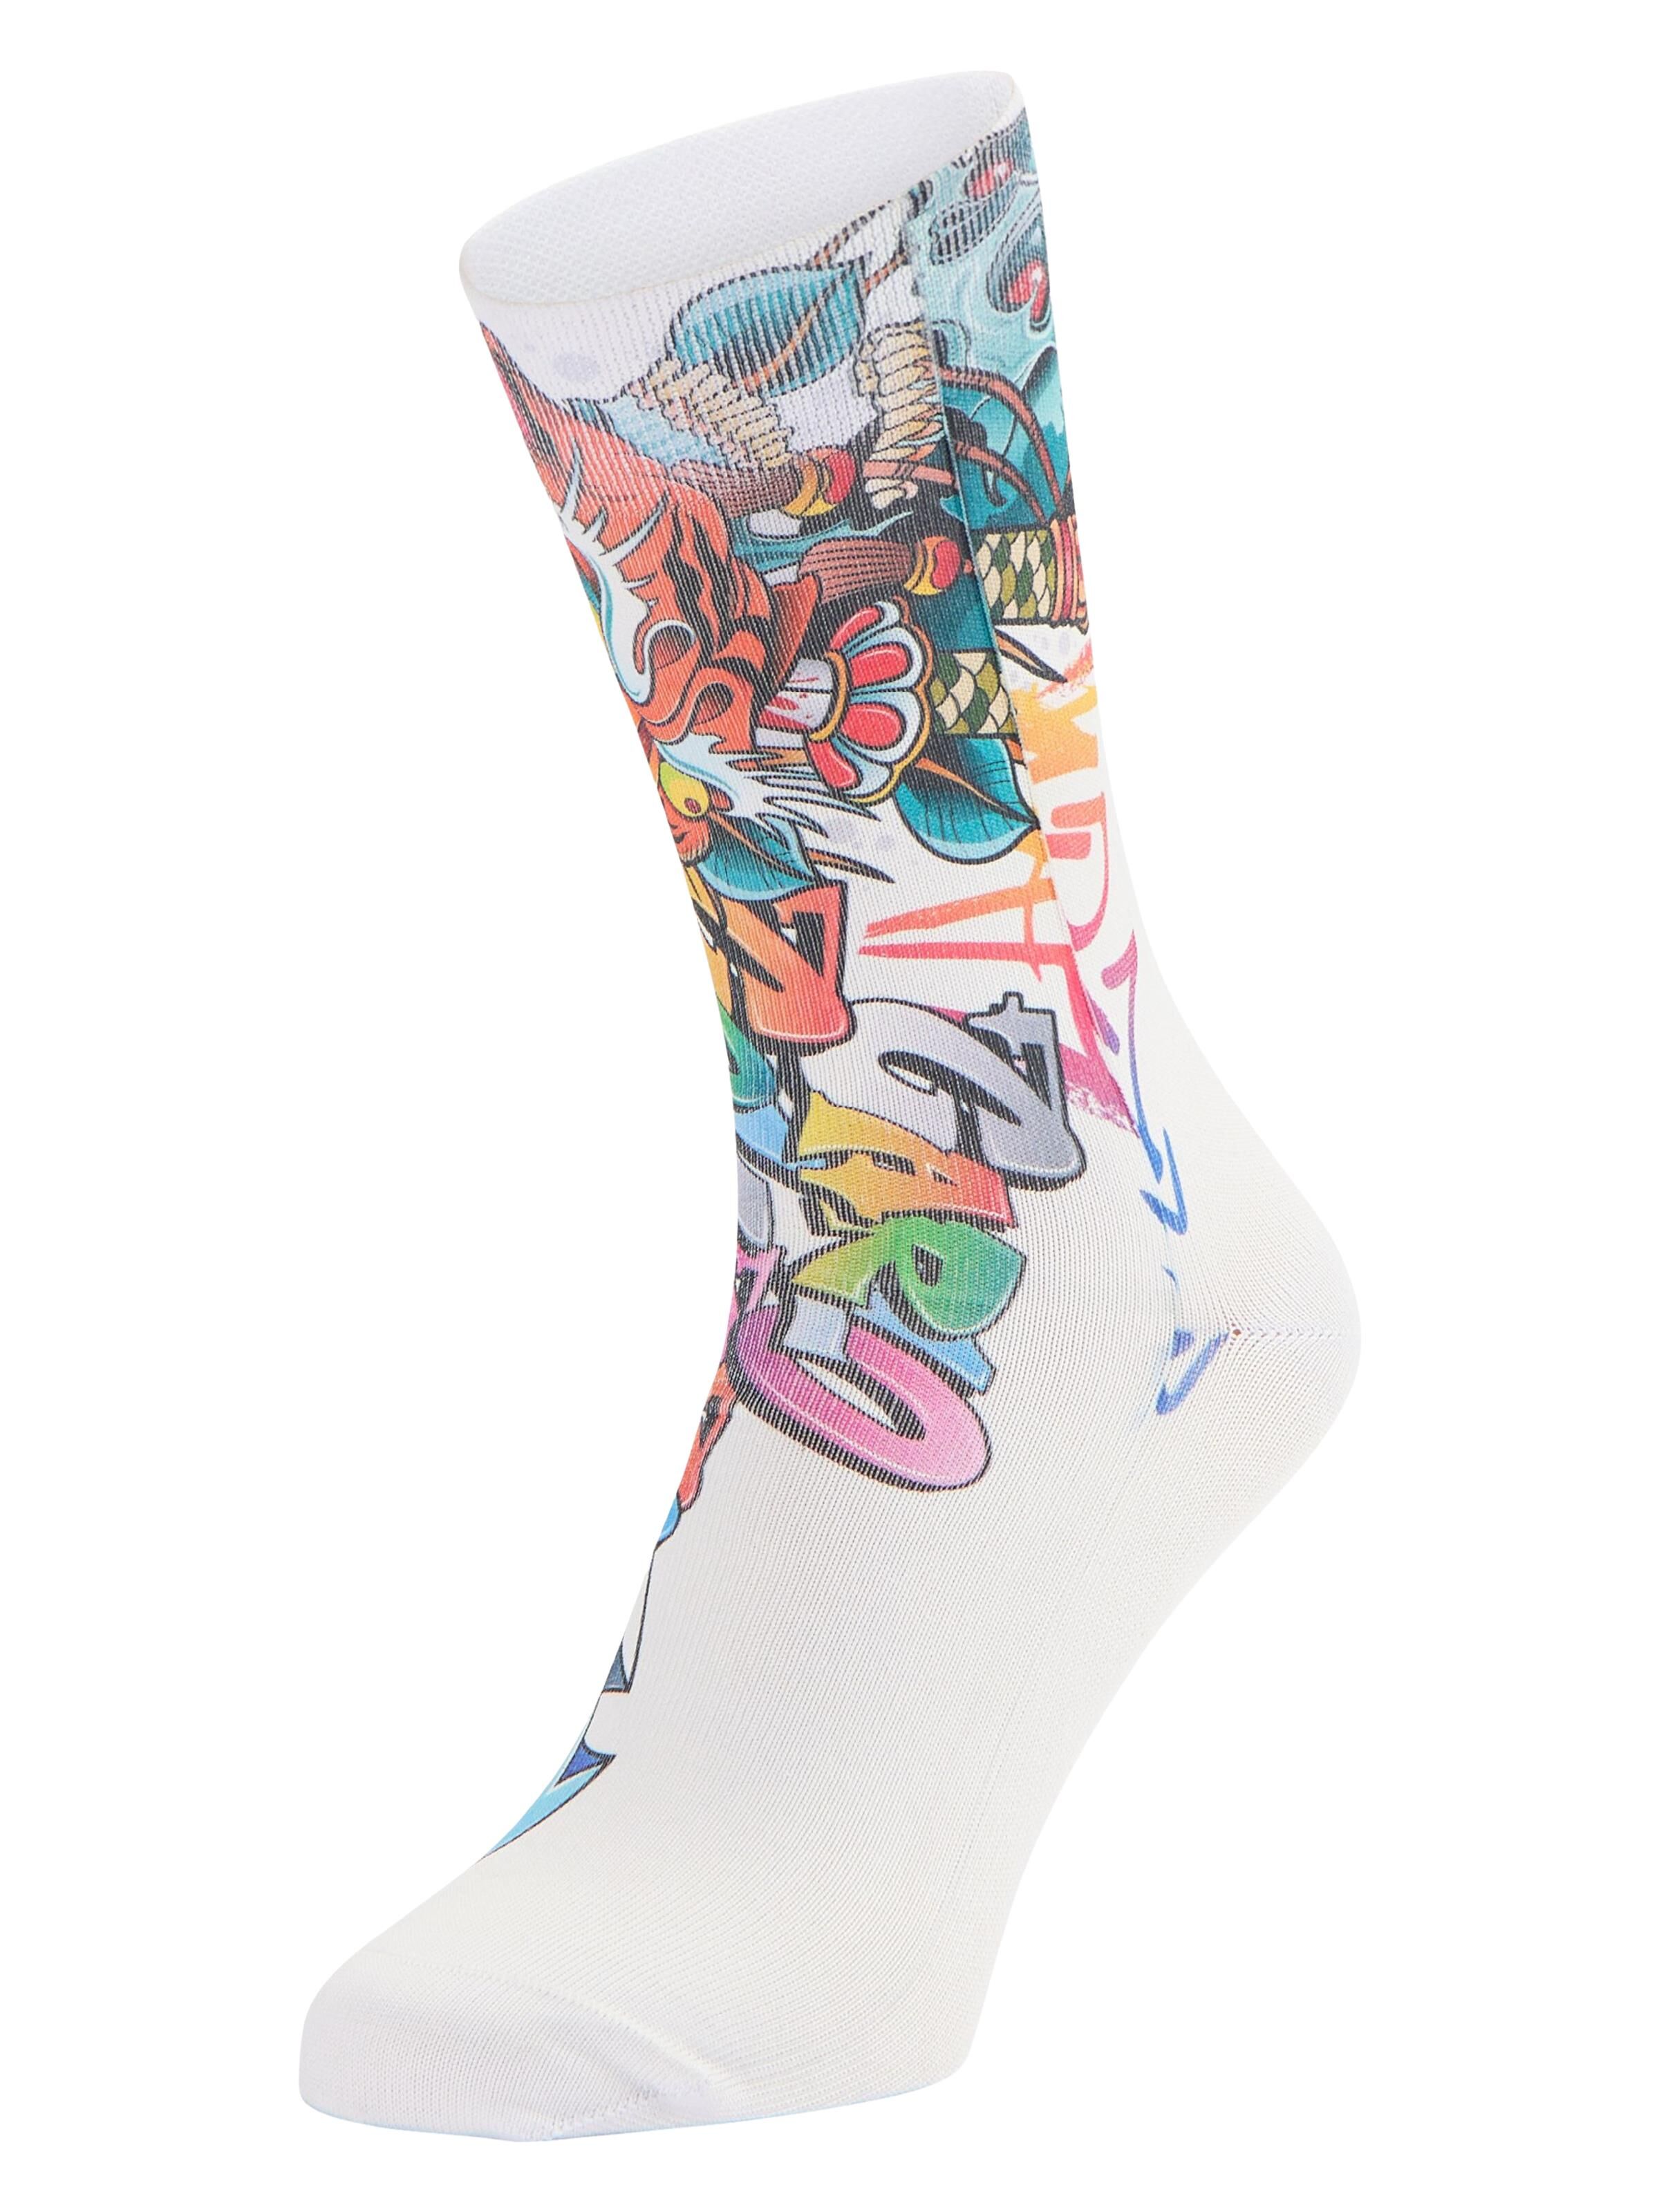 Bedruckte Socken im Graffiti-Style, 1er Pack